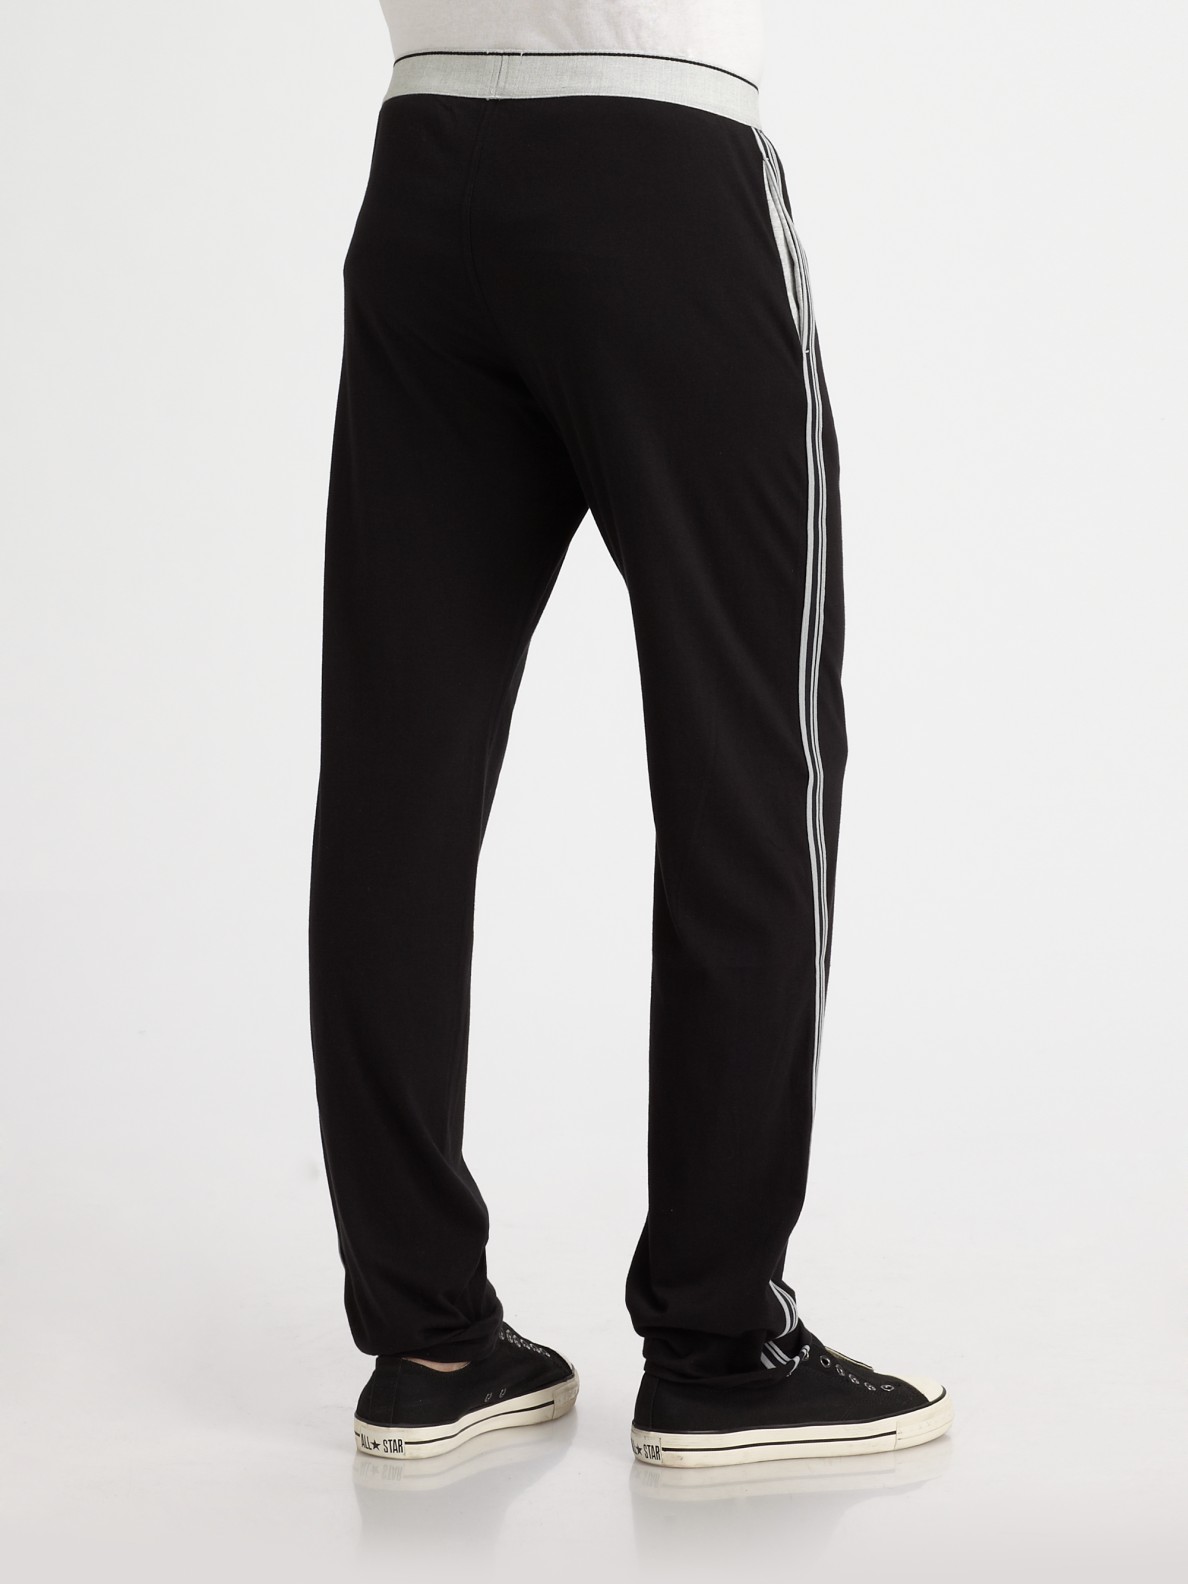 Lyst - Diesel Long Pants with Elastic Waist in Black for Men